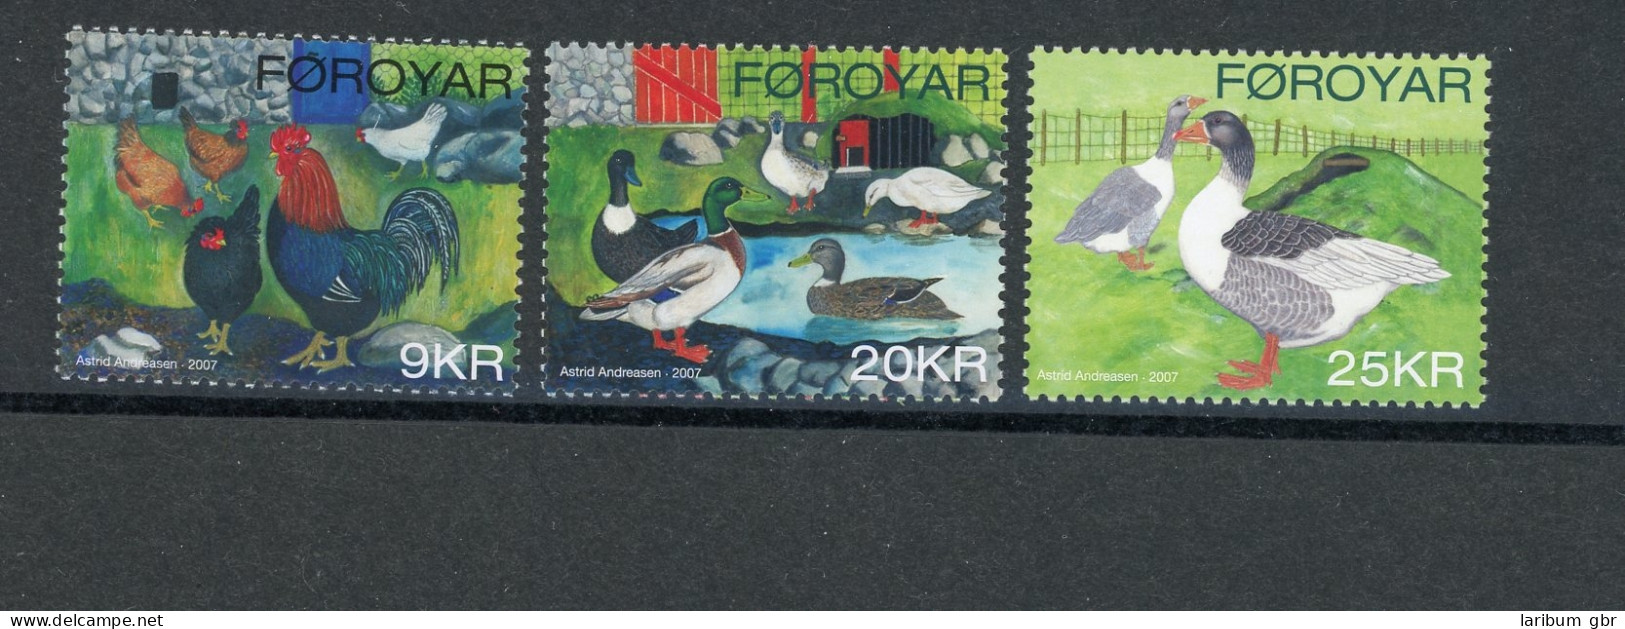 Färöer 312-614 Postfrisch Vögel #JD282 - Faroe Islands